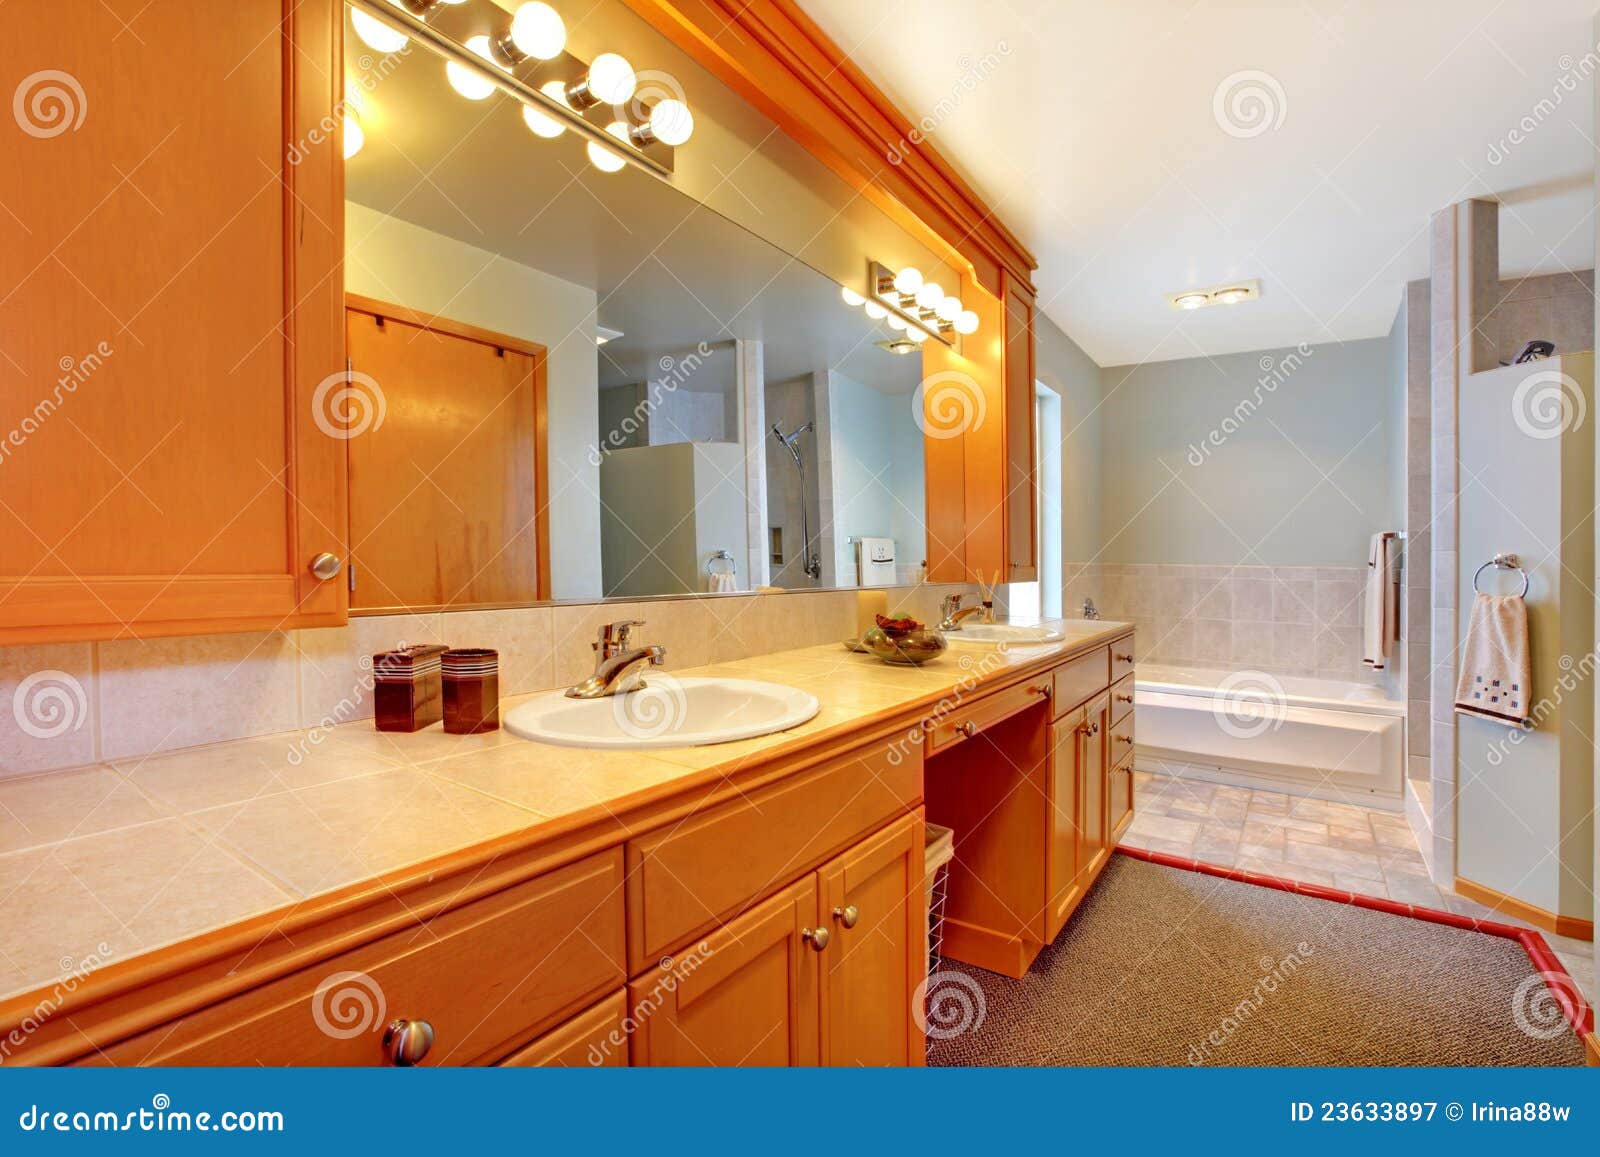 do bathroom double sinks add value